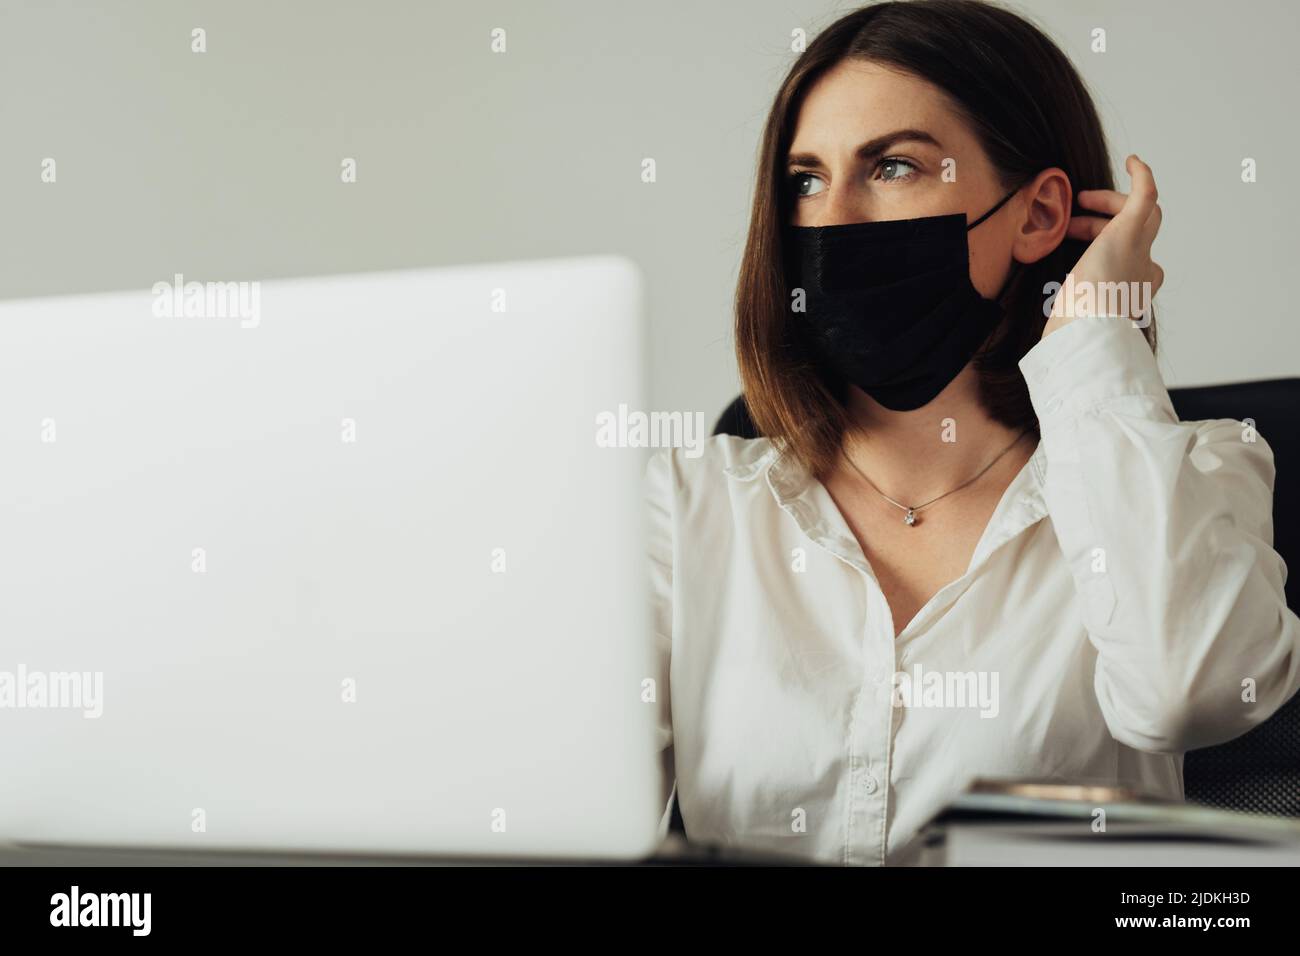 Retrato de una empleada sentada en la oficina, una mujer joven con máscara de protección y trabajando en el ordenador portátil Foto de stock